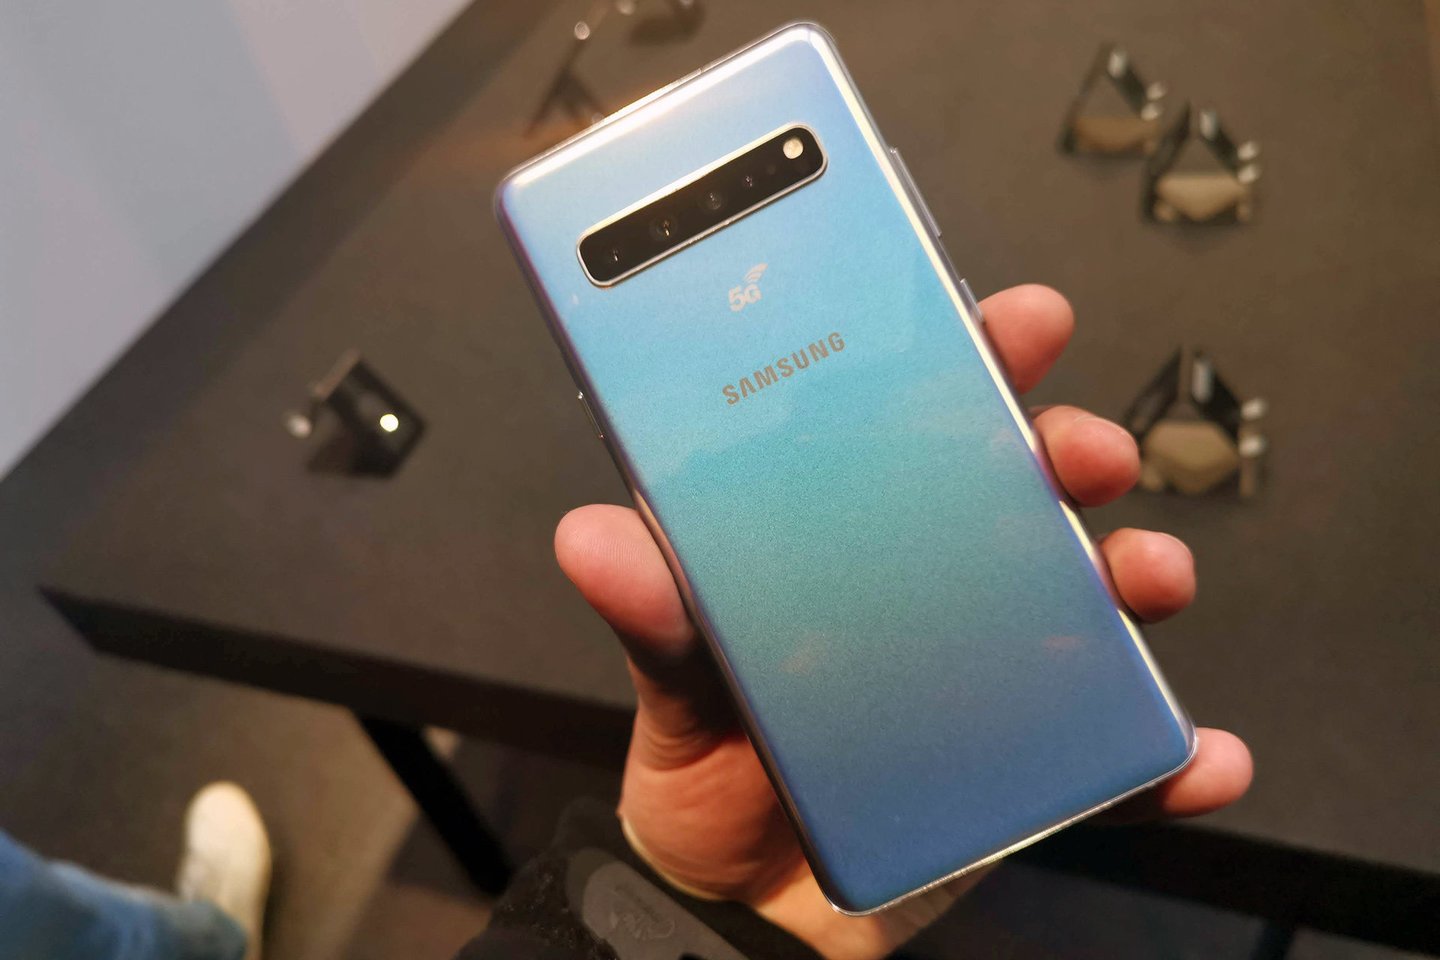  Pietų Korėja gali tapti pirmąja šalimi, paleidusia 5G interneto ryšio paslaugas savo „Samsung Electronics“ išmaniajame telefone „Galaxy S10“.<br> A. Rutkausko nuotr.